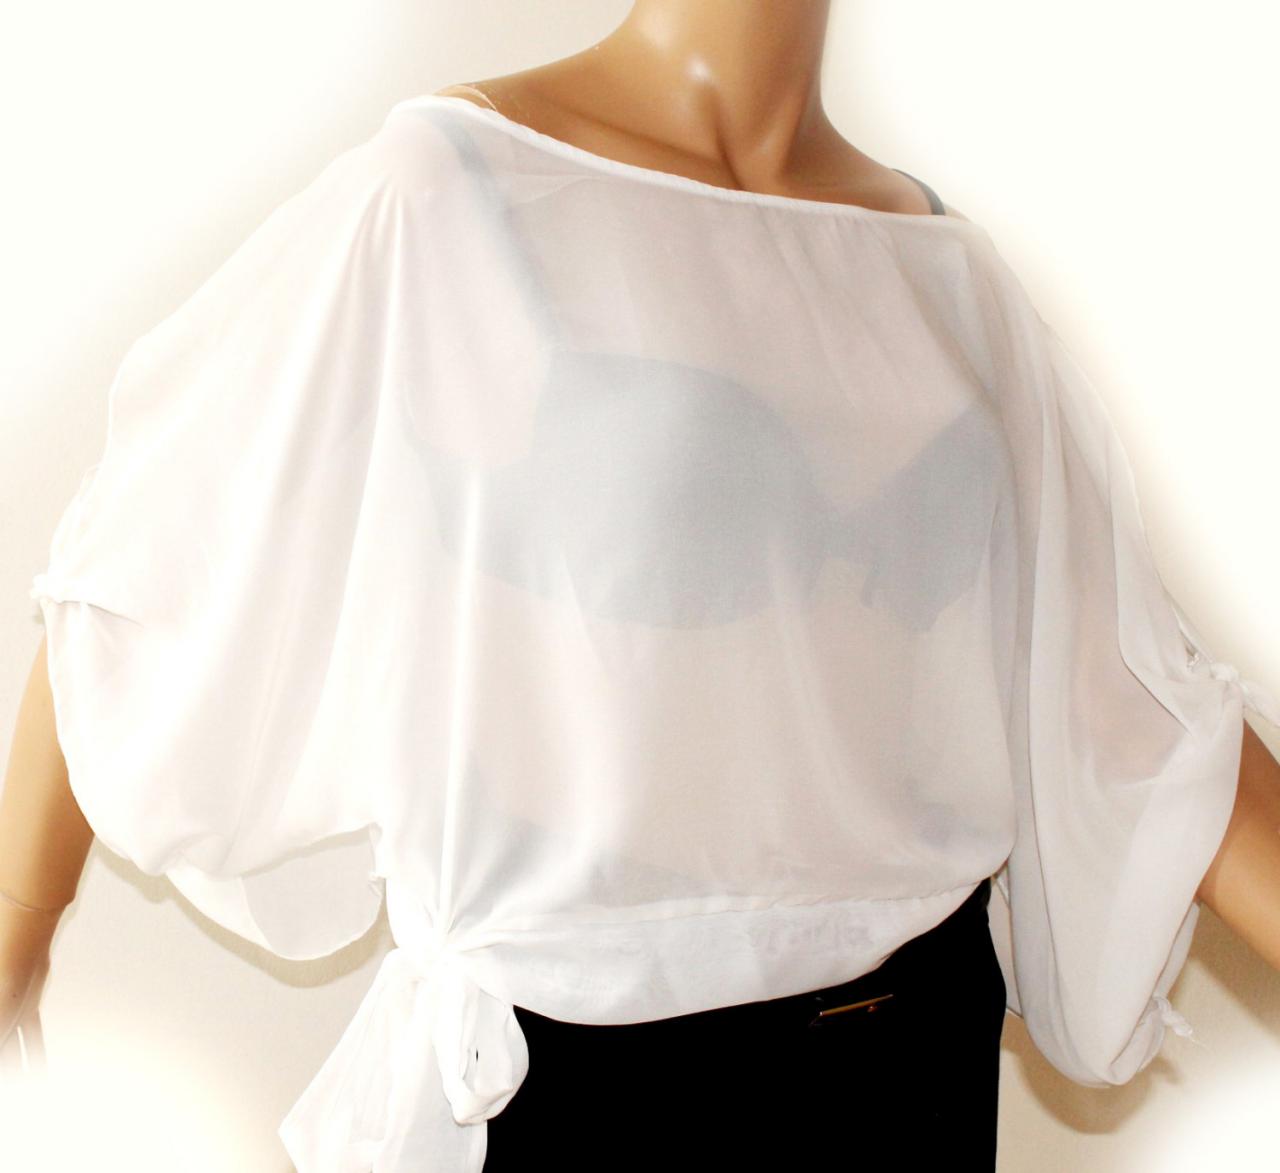 white chiffon blouse plus size